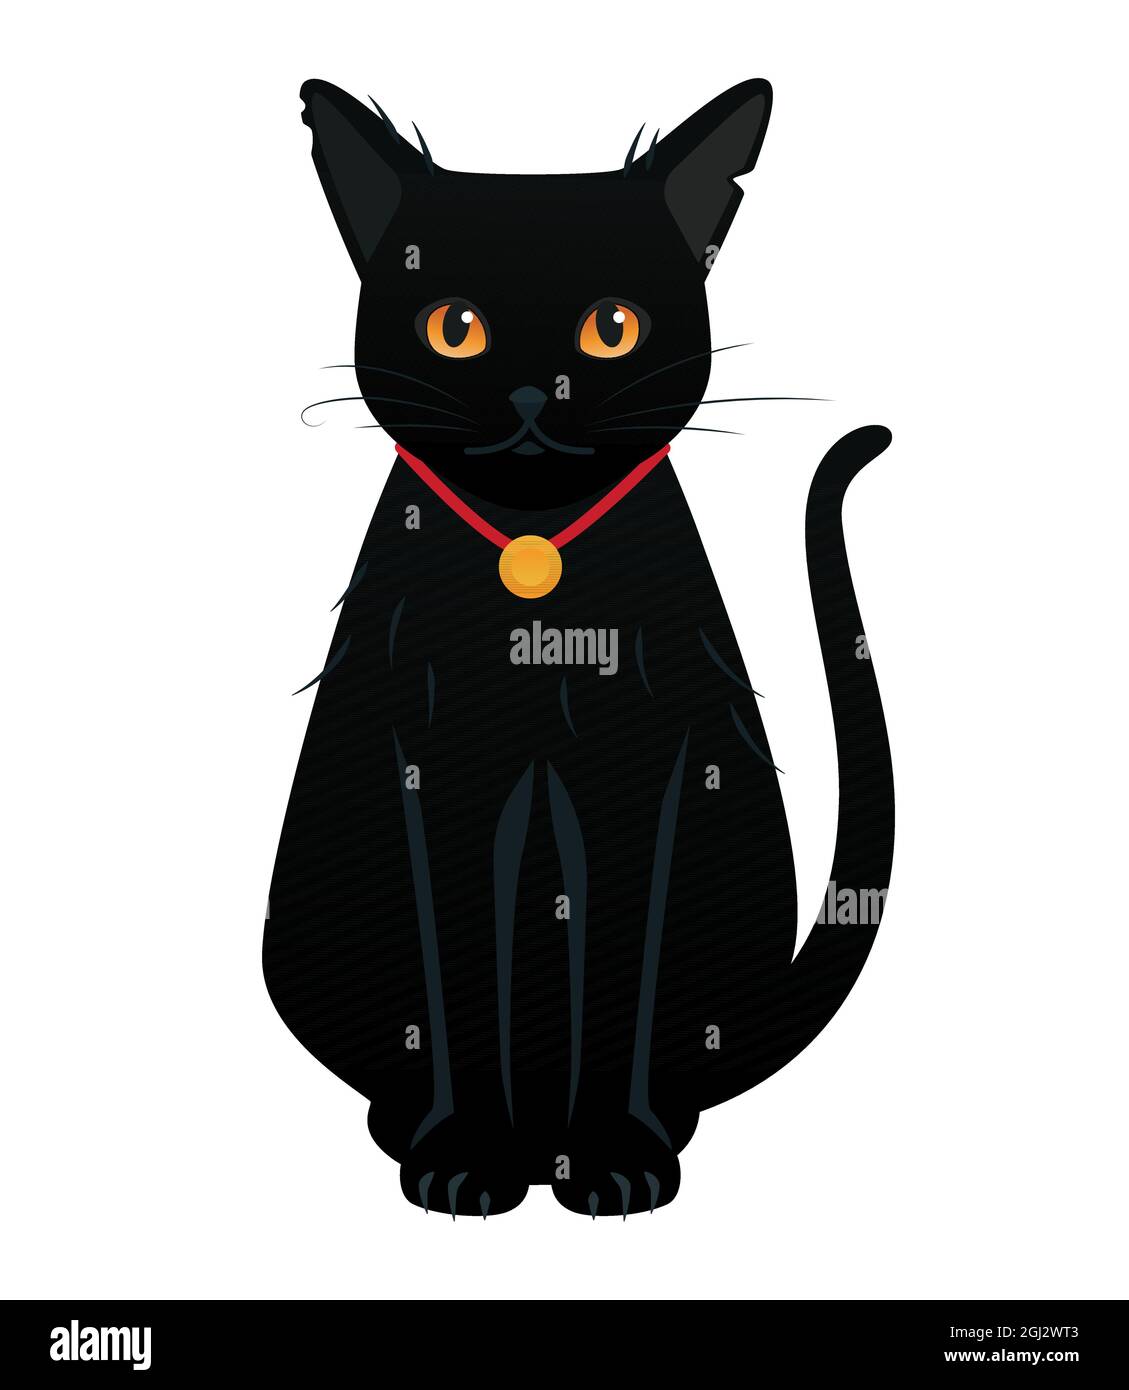 Gato negro de ojos grandes - objeto de estilo caricatura moderno.  Ilustración sobre fondo blanco, se puede utilizar como icono. Animal mágico  que acompaña a las brujas, sorc Imagen Vector de stock -